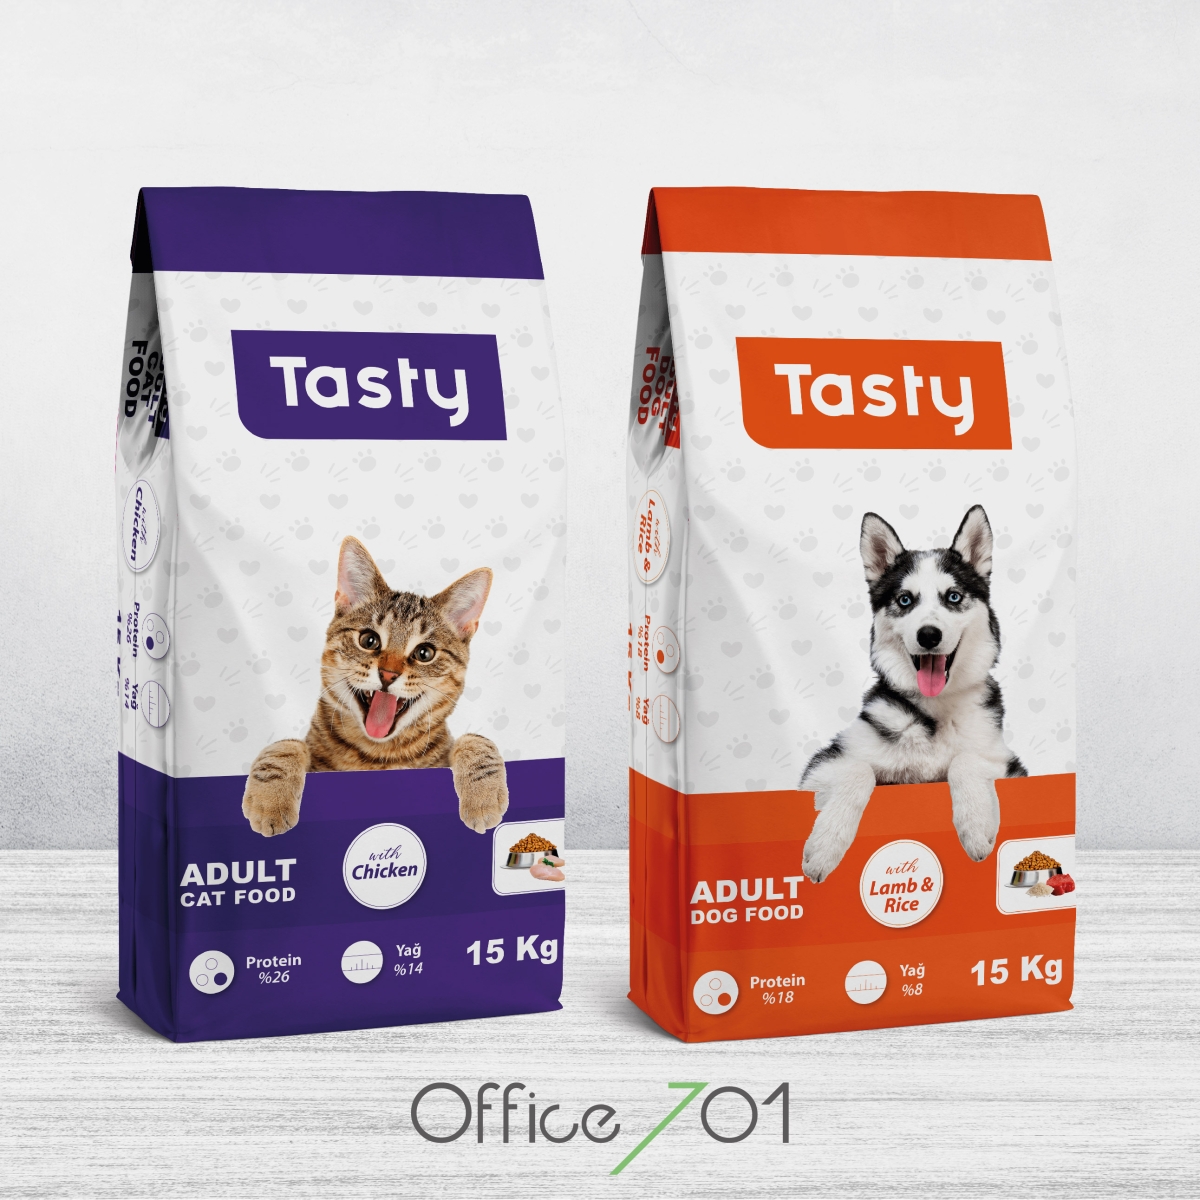 Office701 | Tasty | Dog Food Package Design